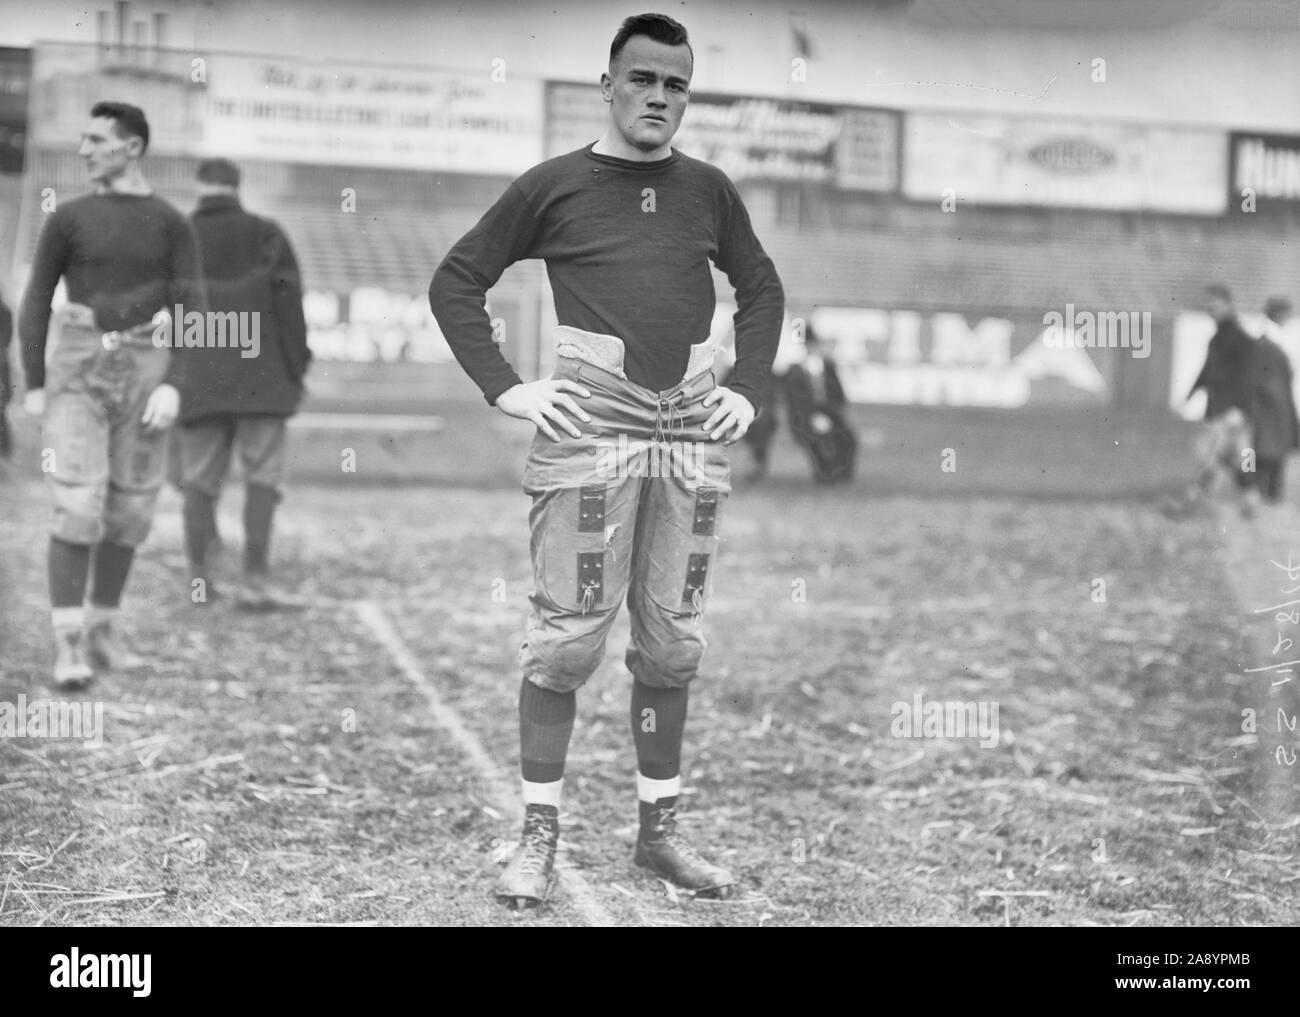 La photographie montre Burleigh Cruikshank, un joueur de football All-American pour Washington & Jefferson College, avant un match de football contre l'université Rutgers au Polo Grounds de New York, le 28 novembre, 1914 Banque D'Images